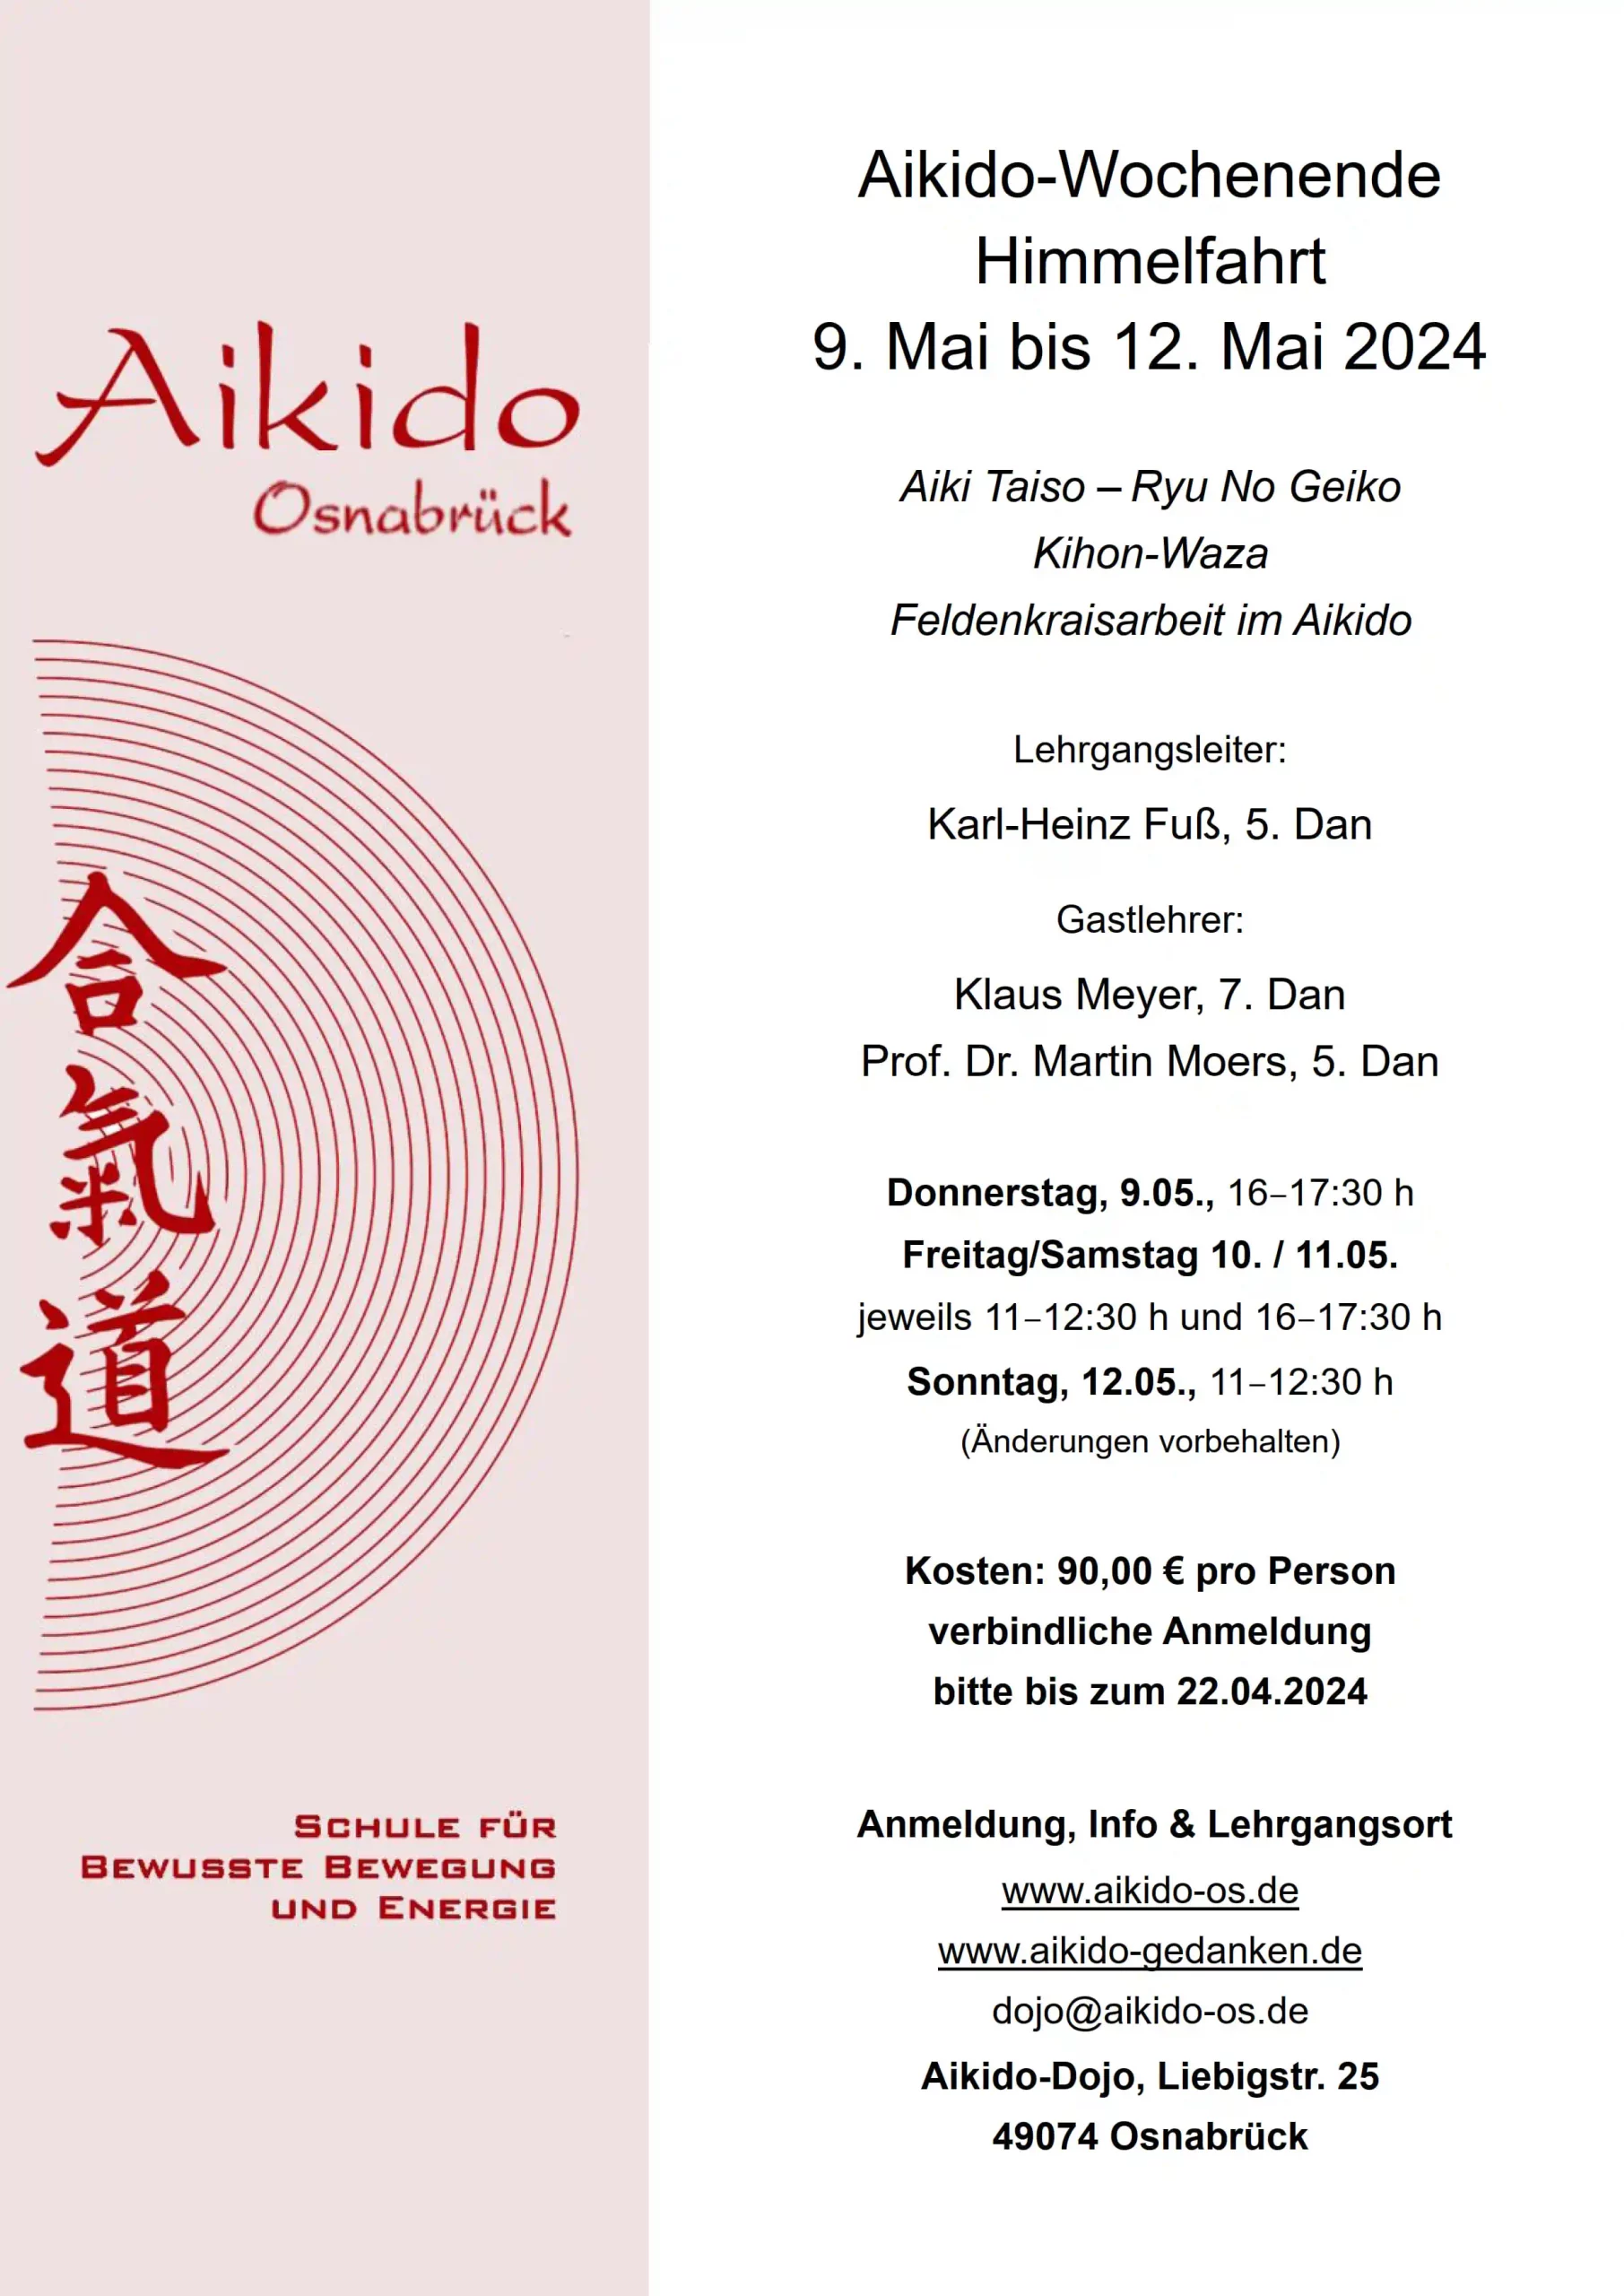 Aikido Kihon-Waza – Grundlagenforschung der Basics - Ausschreibung